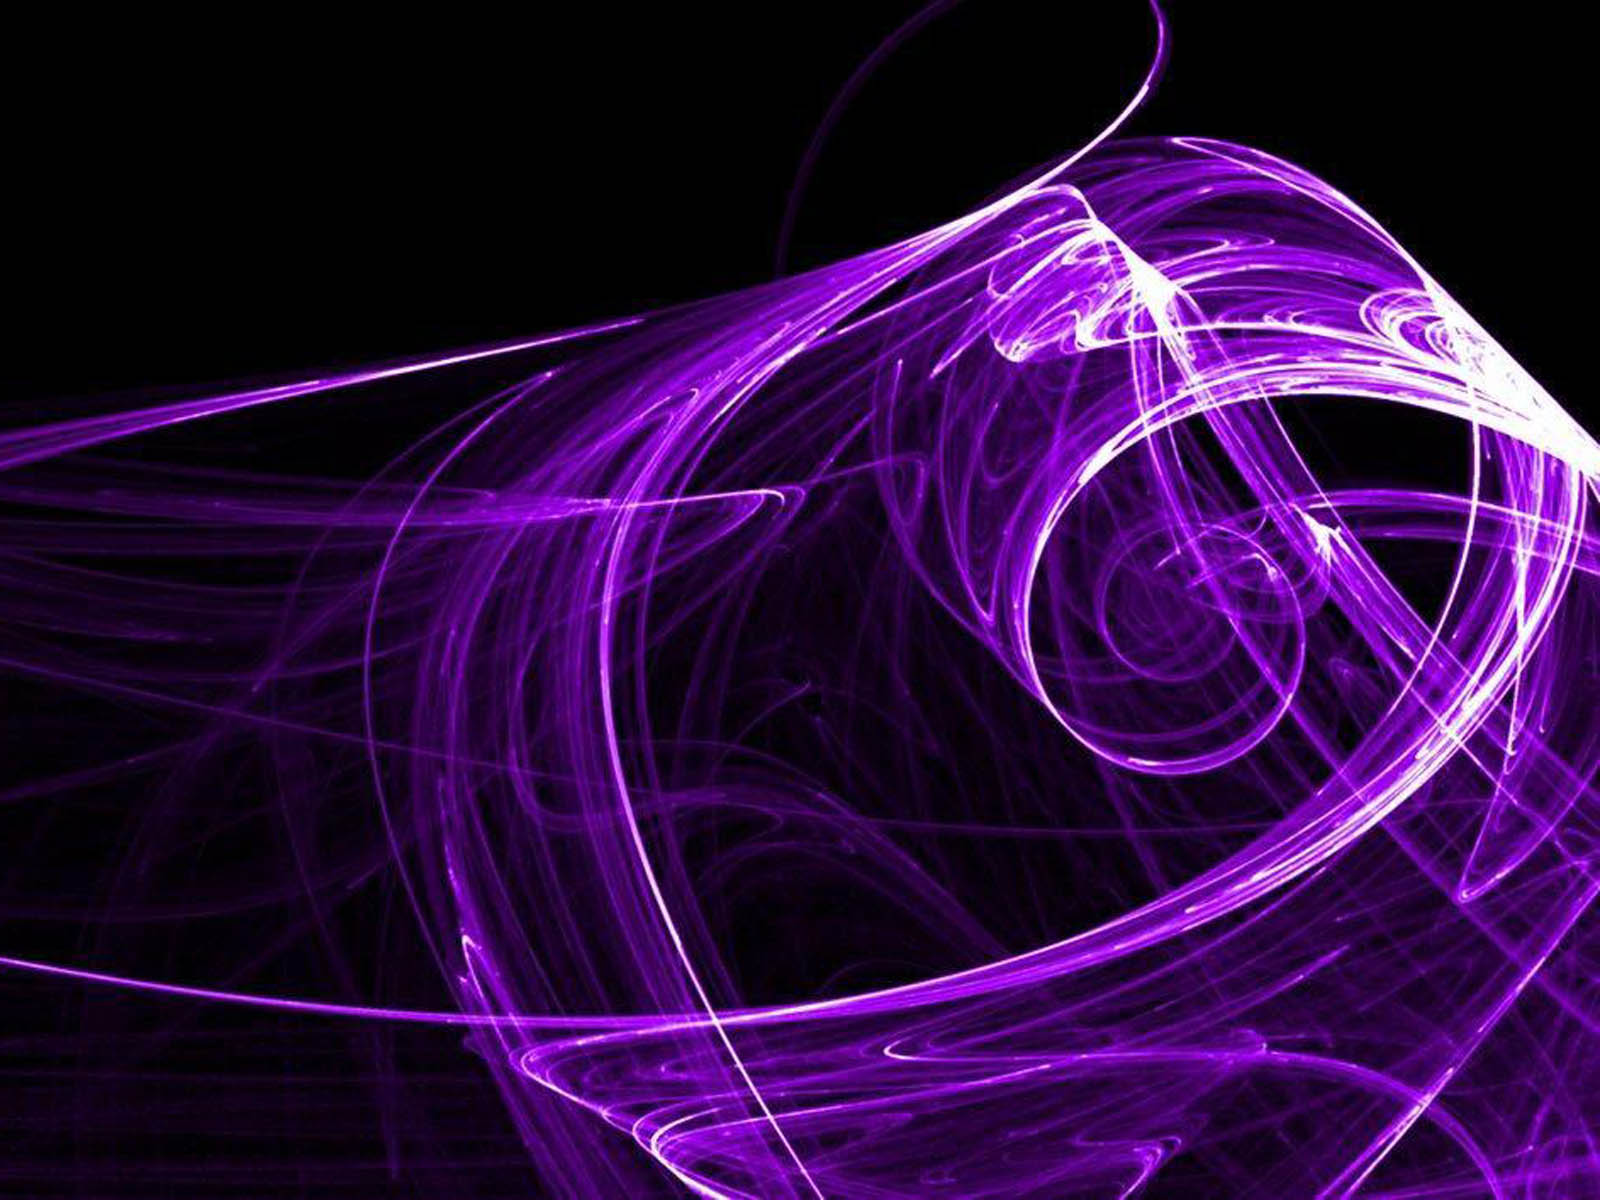 Abstract Desktop Wallpapers Purple Abstract Desktop Backgrounds 1600x1200